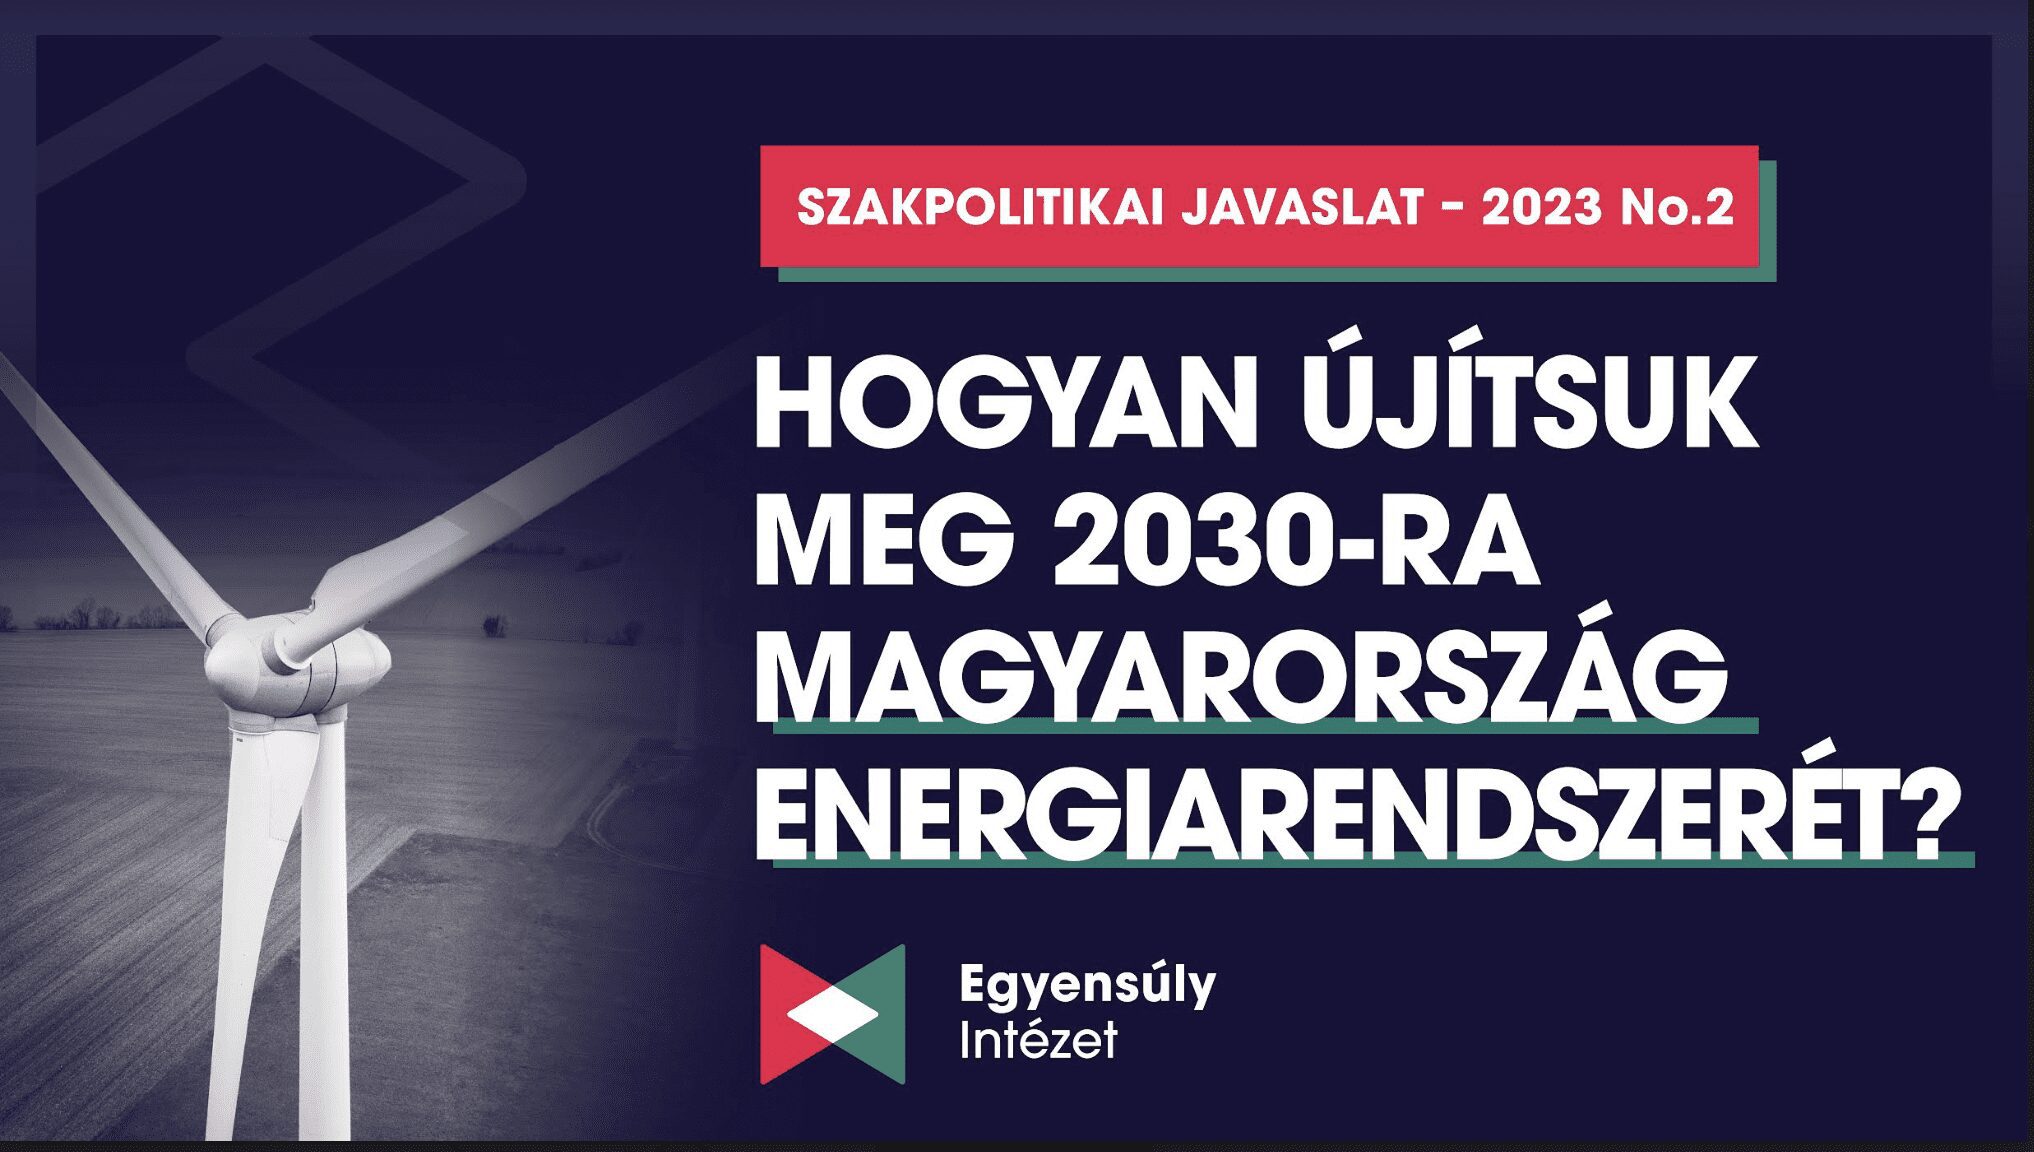 Hogyan újítsuk meg 2030-ra Magyarország energiarendszerét?